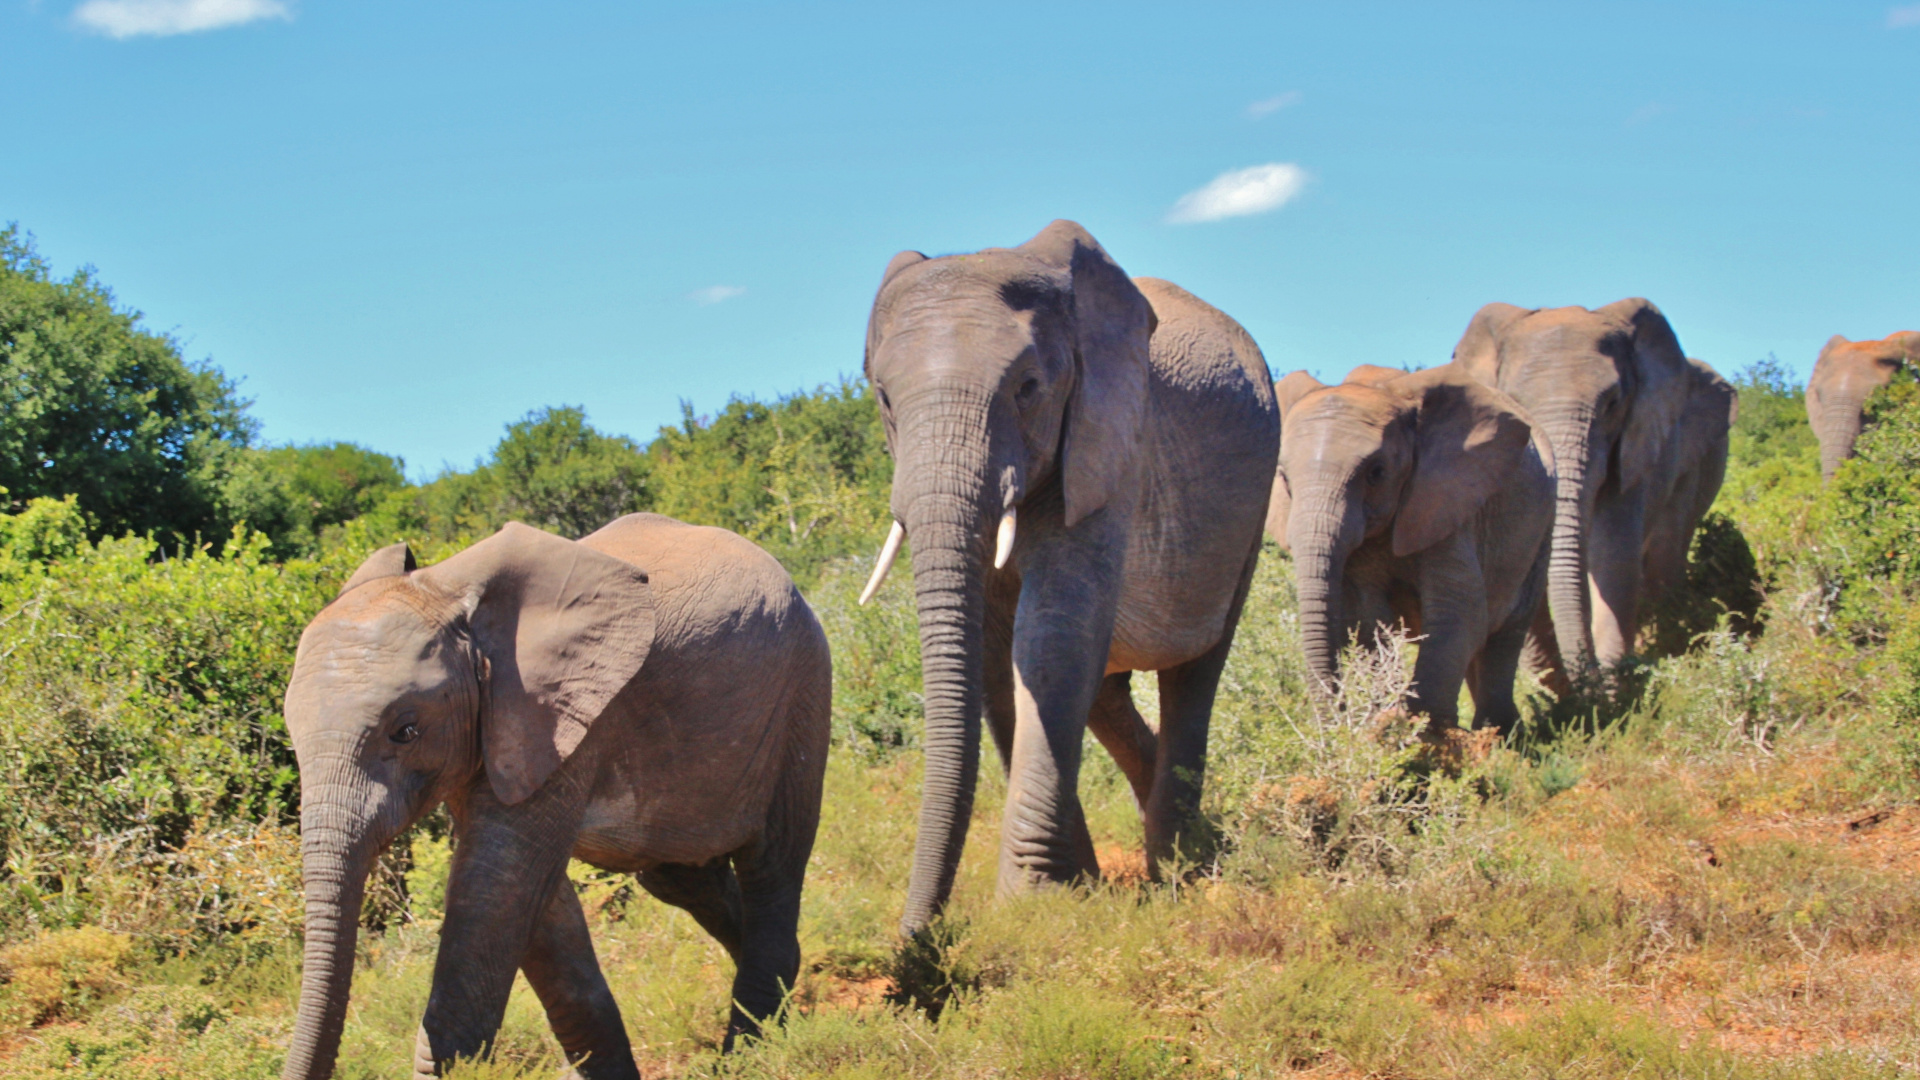 非洲丛林中的大象, 大象和猛犸象, 陆地动物, 野生动物, 非洲象 壁纸 1920x1080 允许